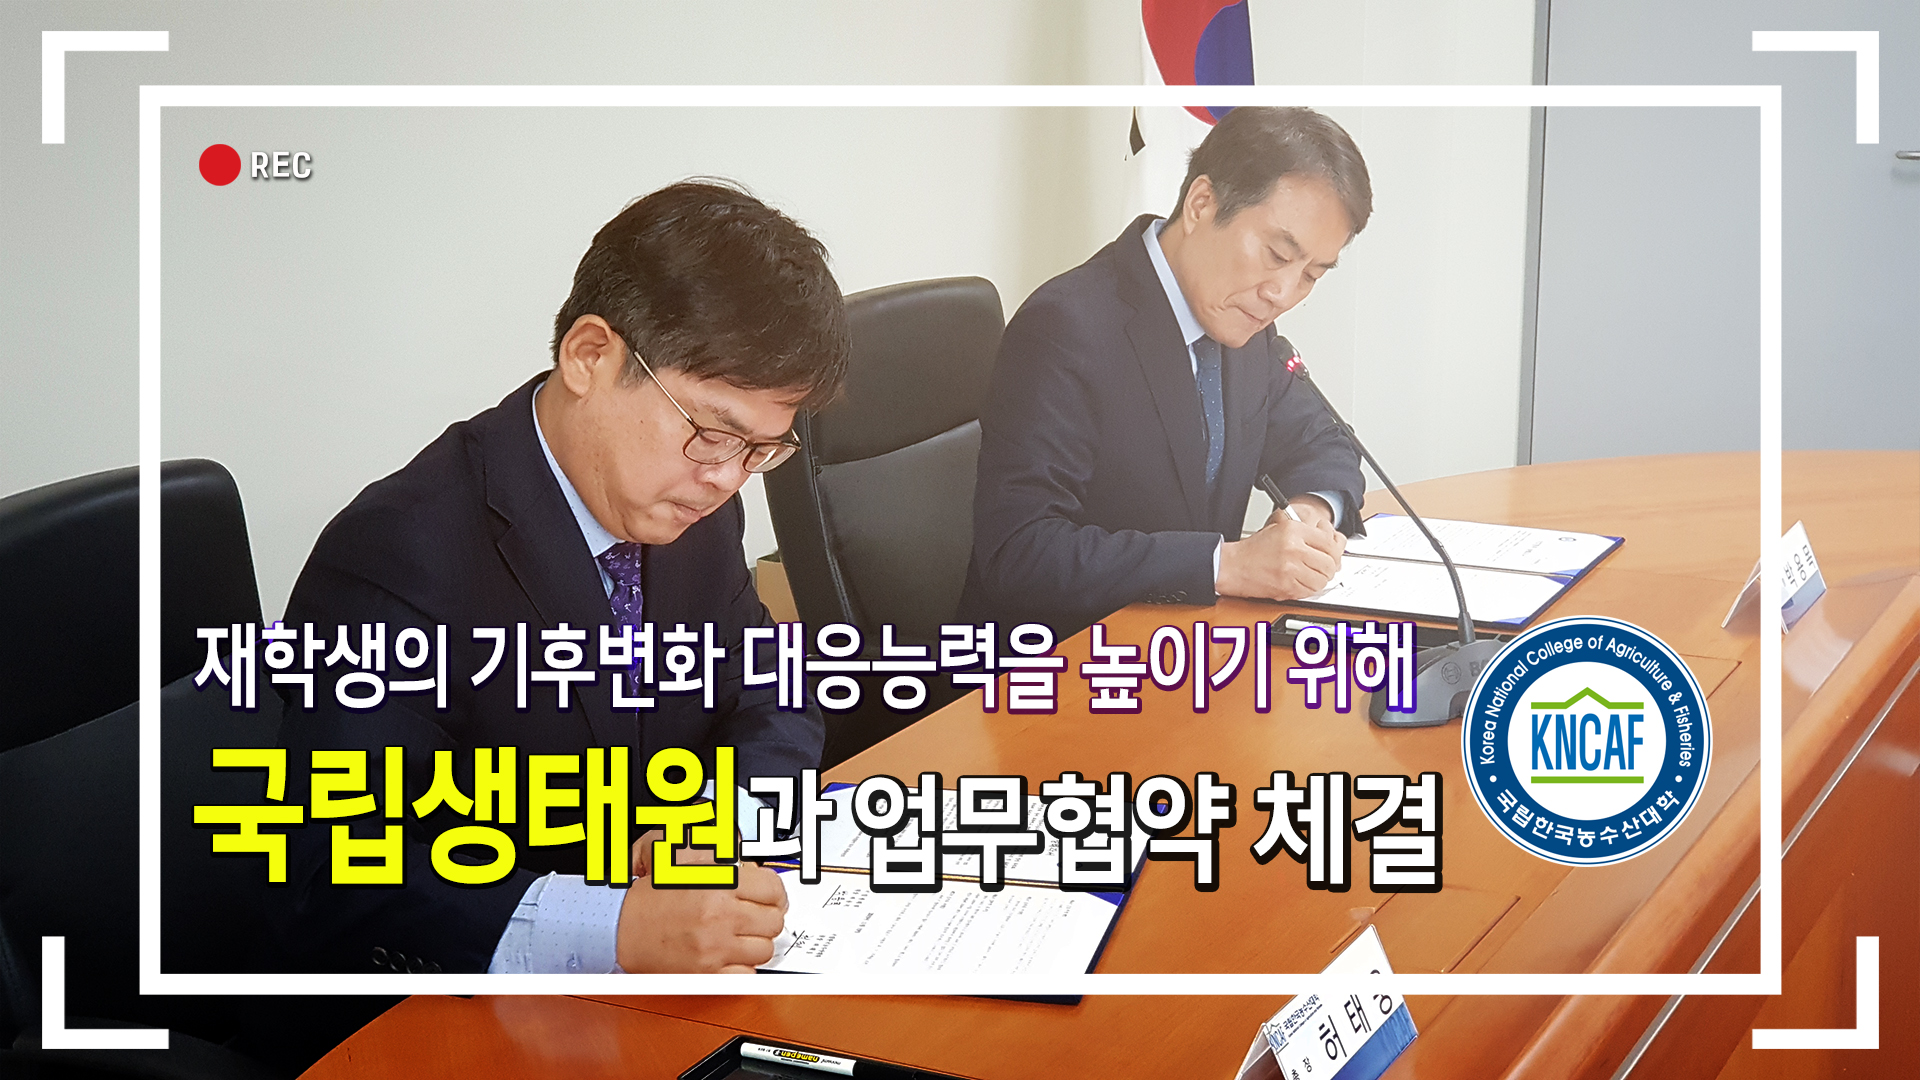 한국농수산대학, 국립생태원과 업무협약을 체결하다!